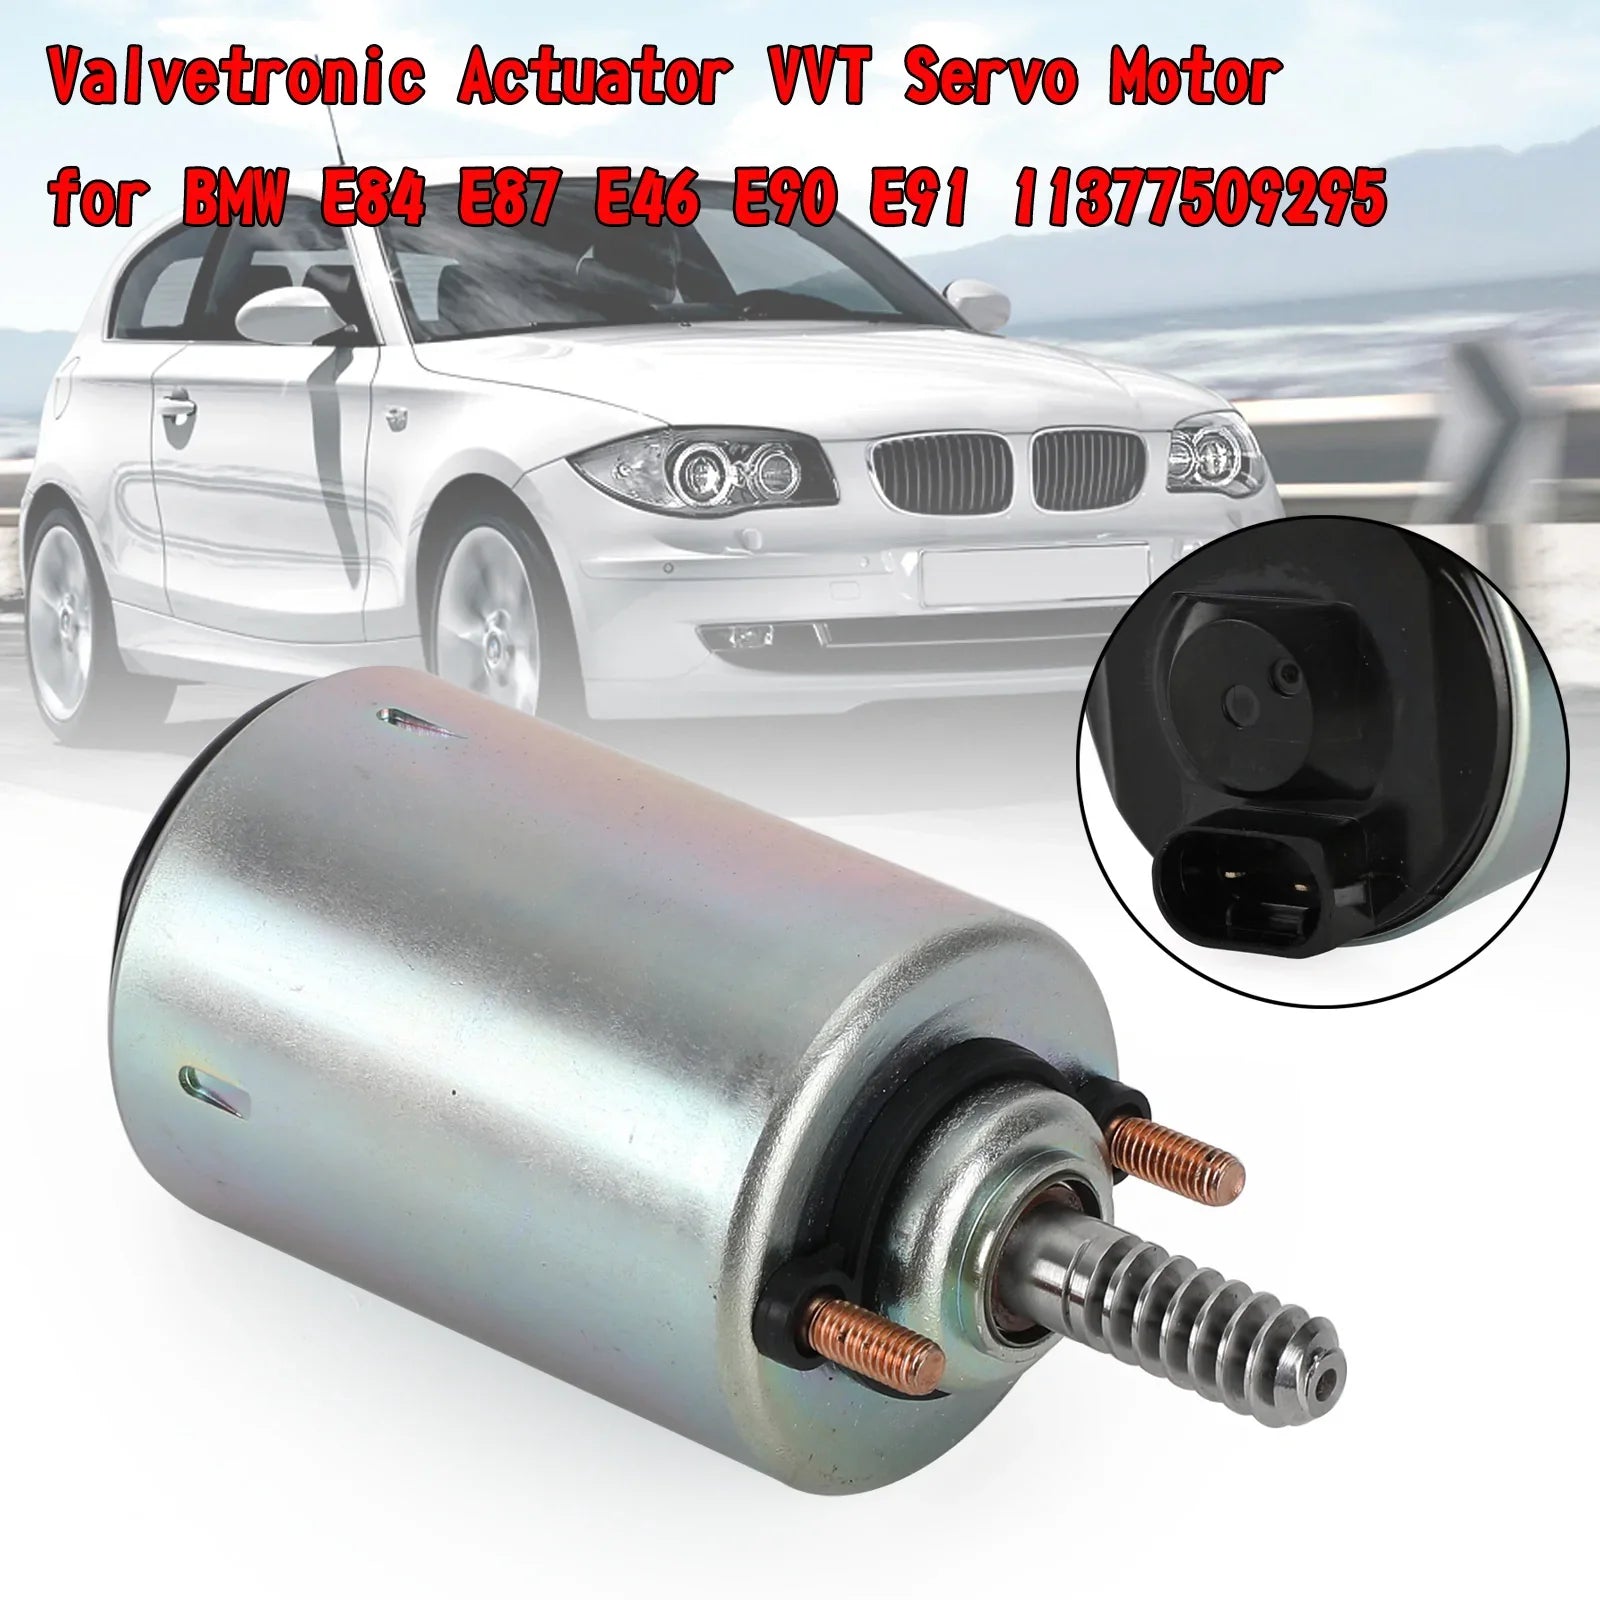 Valvetronic Actionneur VVT Servo Moteur pour BMW E84 E87 E46 E90 E91 11377509295 Générique